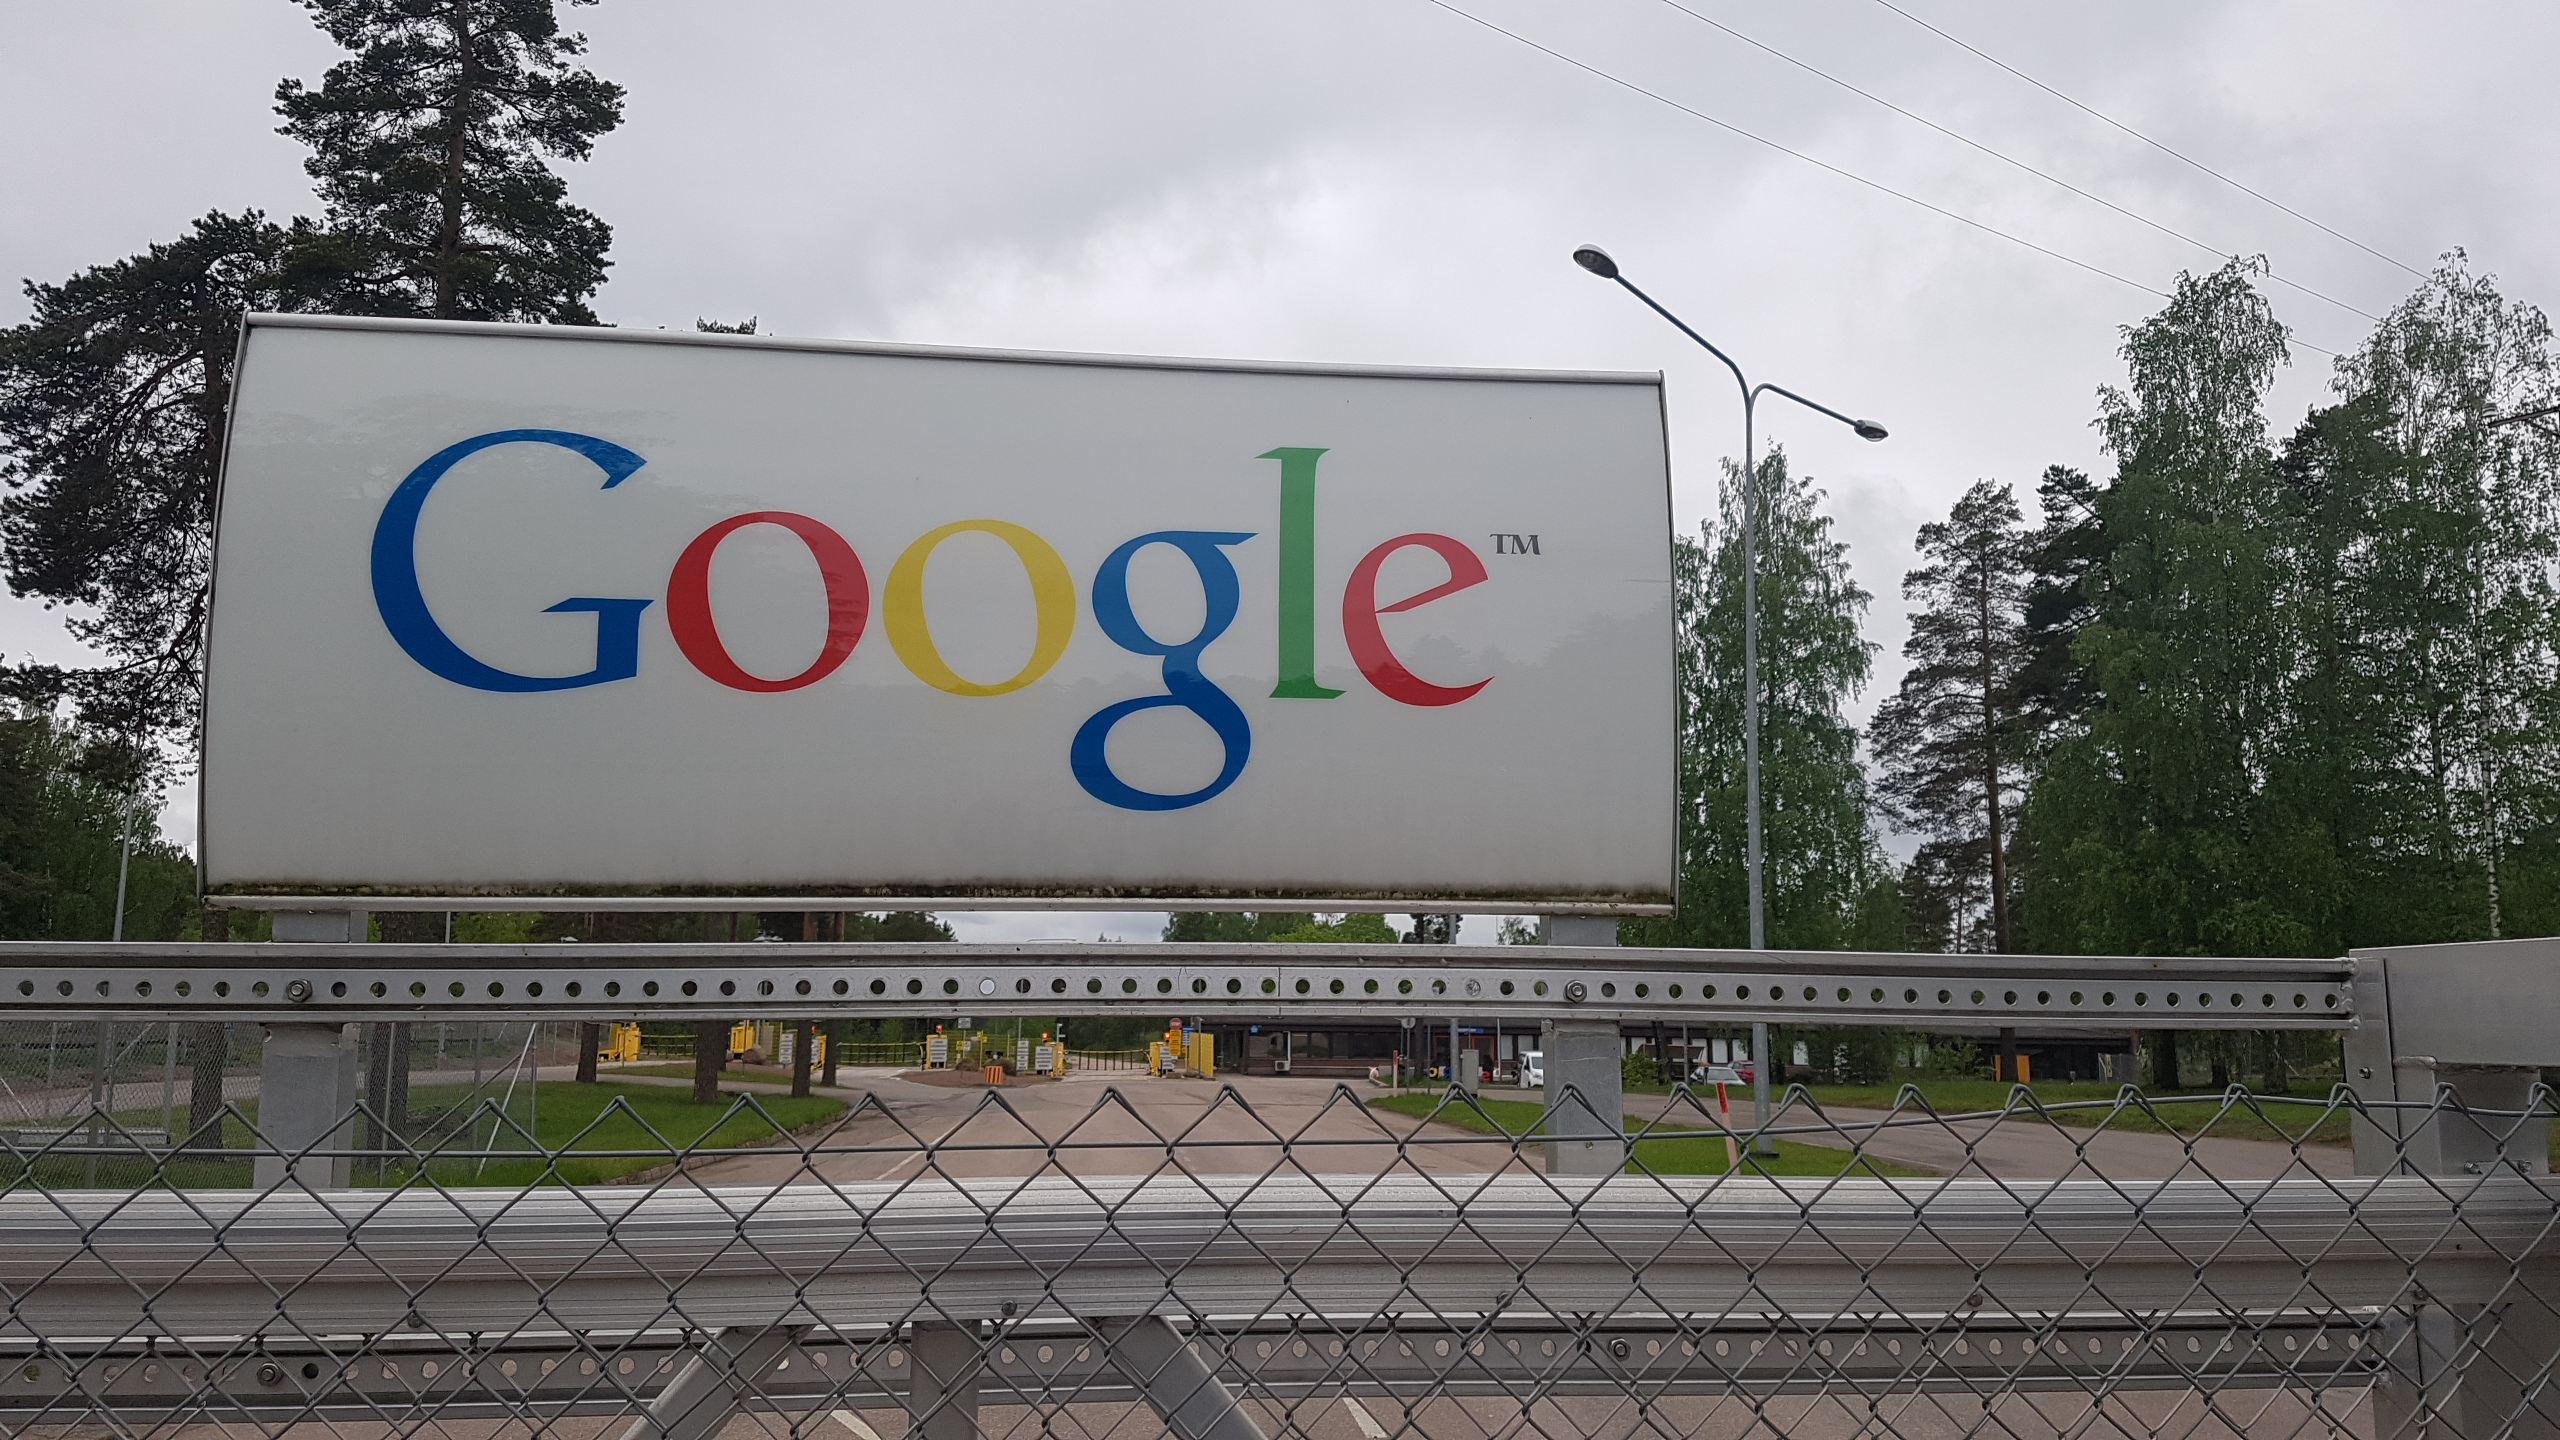 Google eröffnet nächstes Jahr sechstes Rechenzentrum in Hamina mit 400 Mitarbeitern